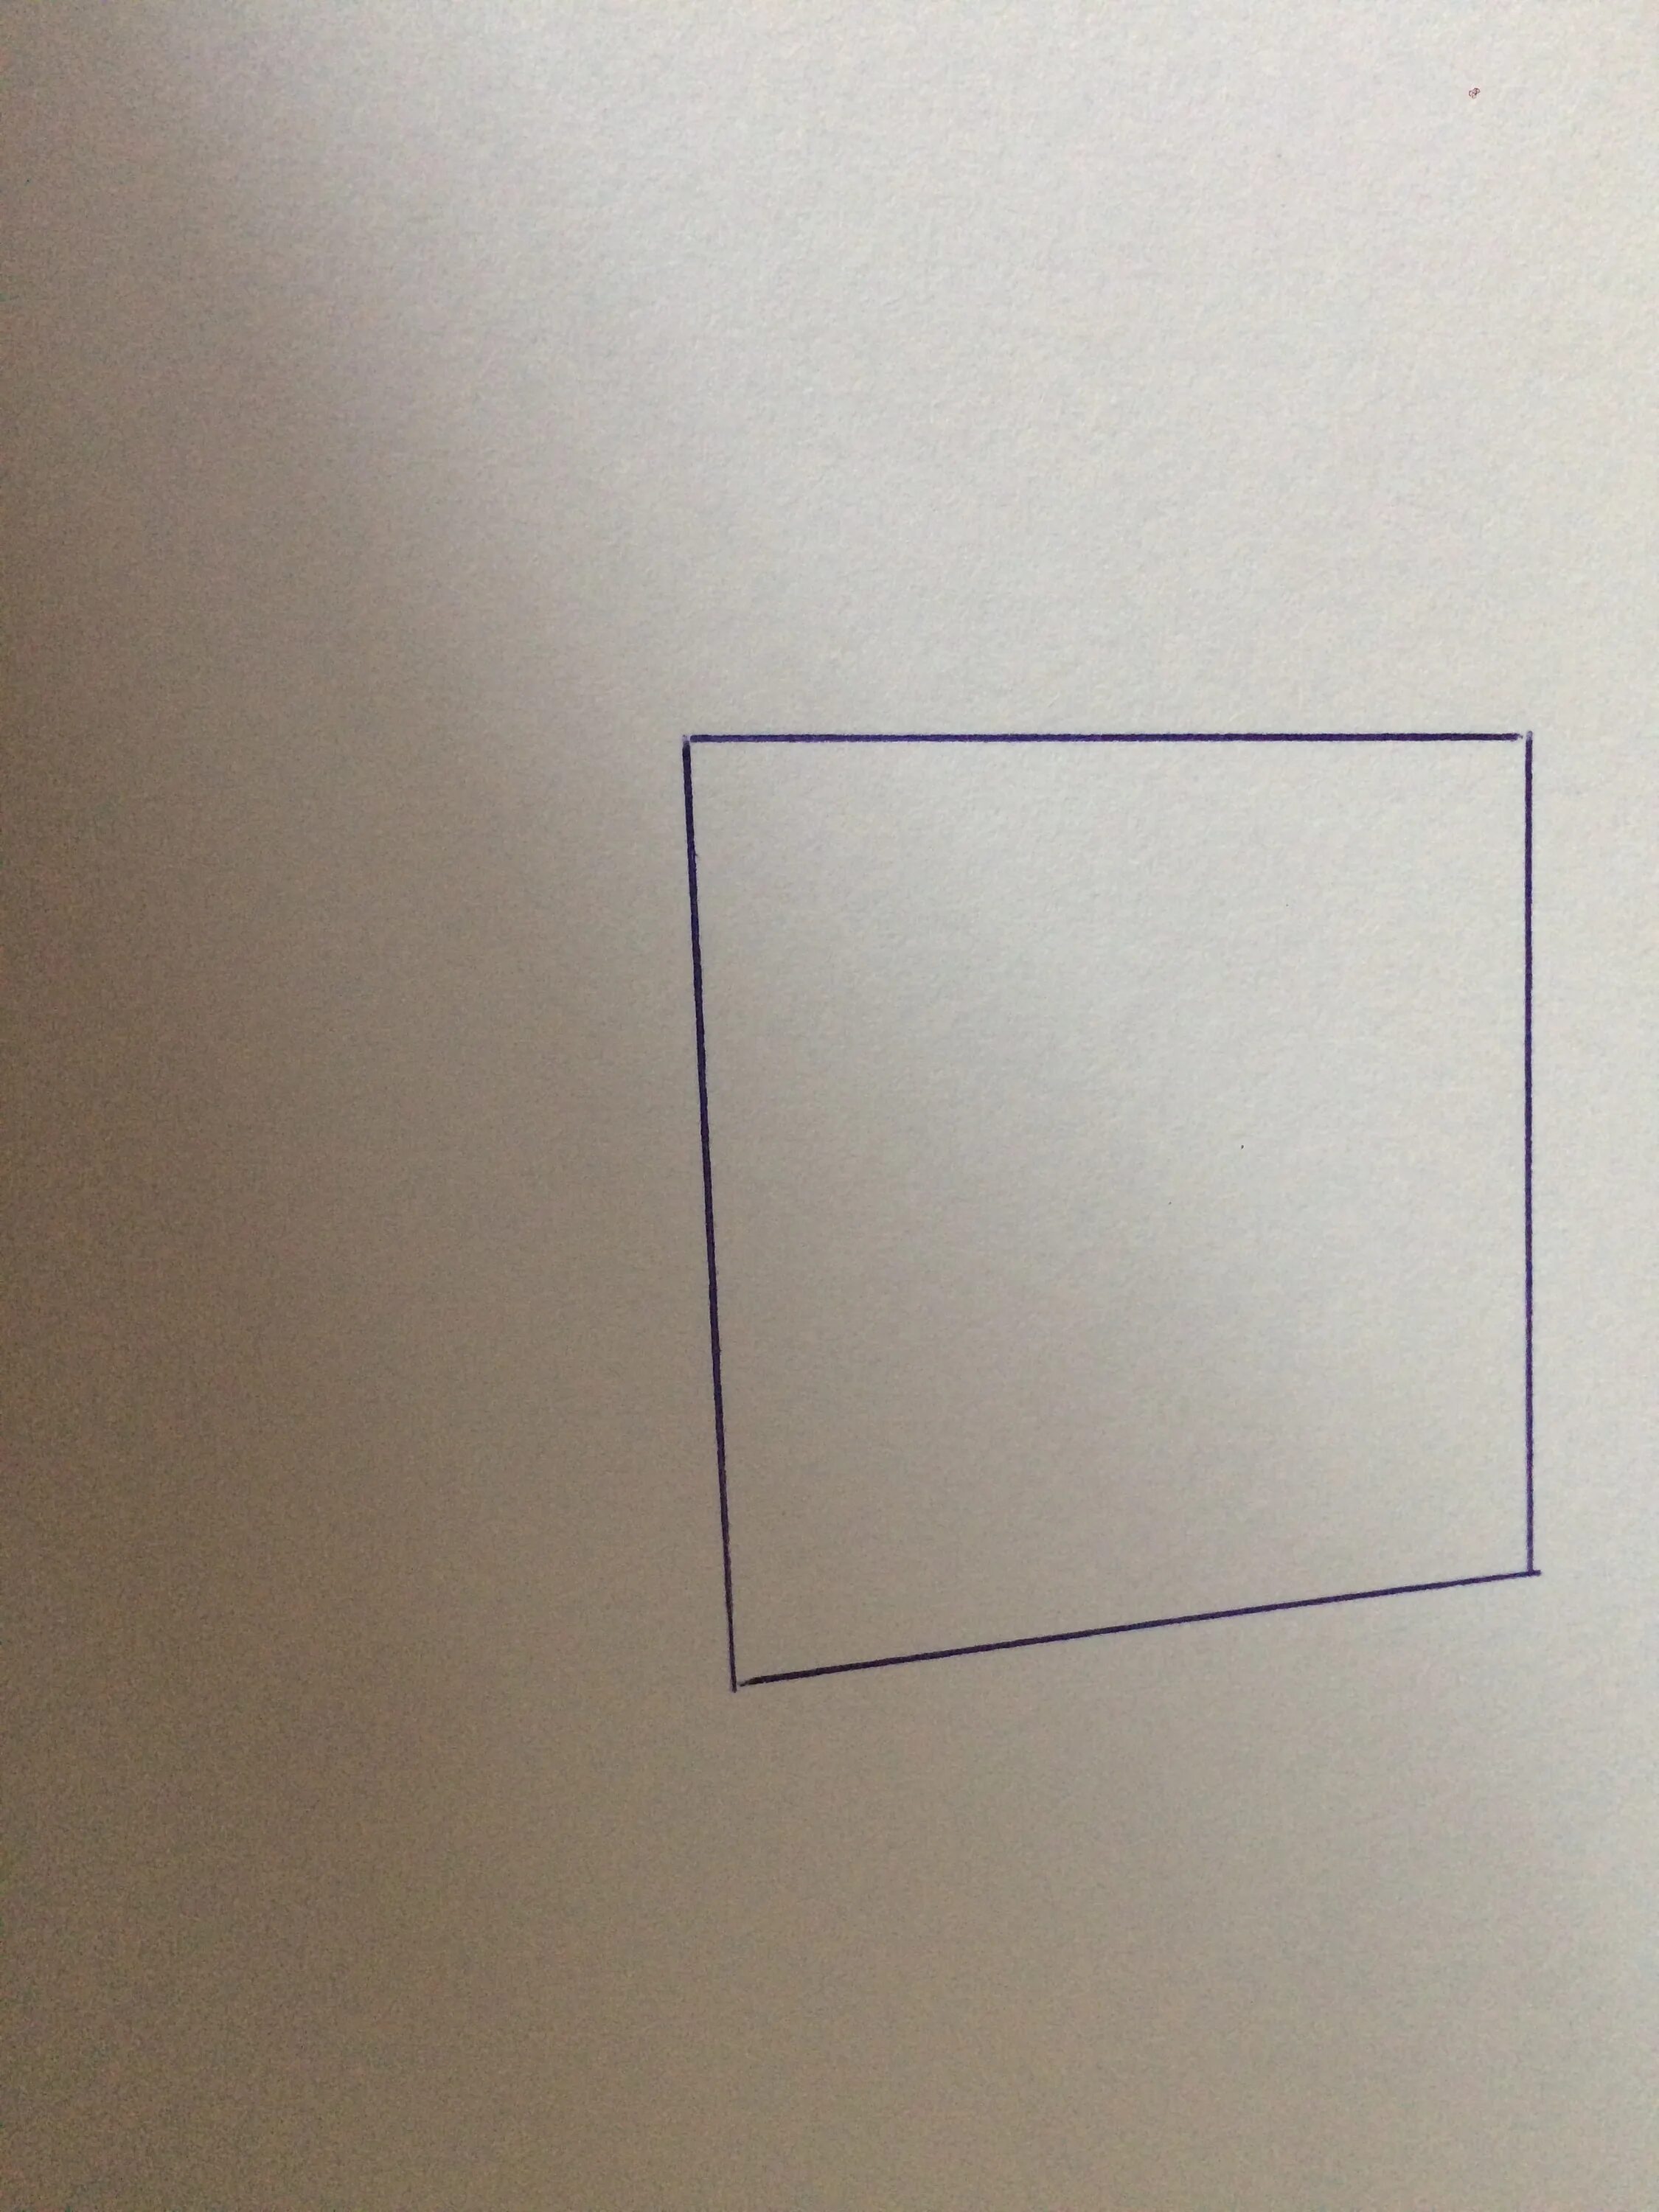 Квадратный лист бумаги со стороной 2. Построить прямоугольник на немнованой бумаге. На нелинованной бумаге начертите прямоугольник. Прямоугольники превратить во что нибудь интересное. Нарисовать прямоугольник на нелинованной.